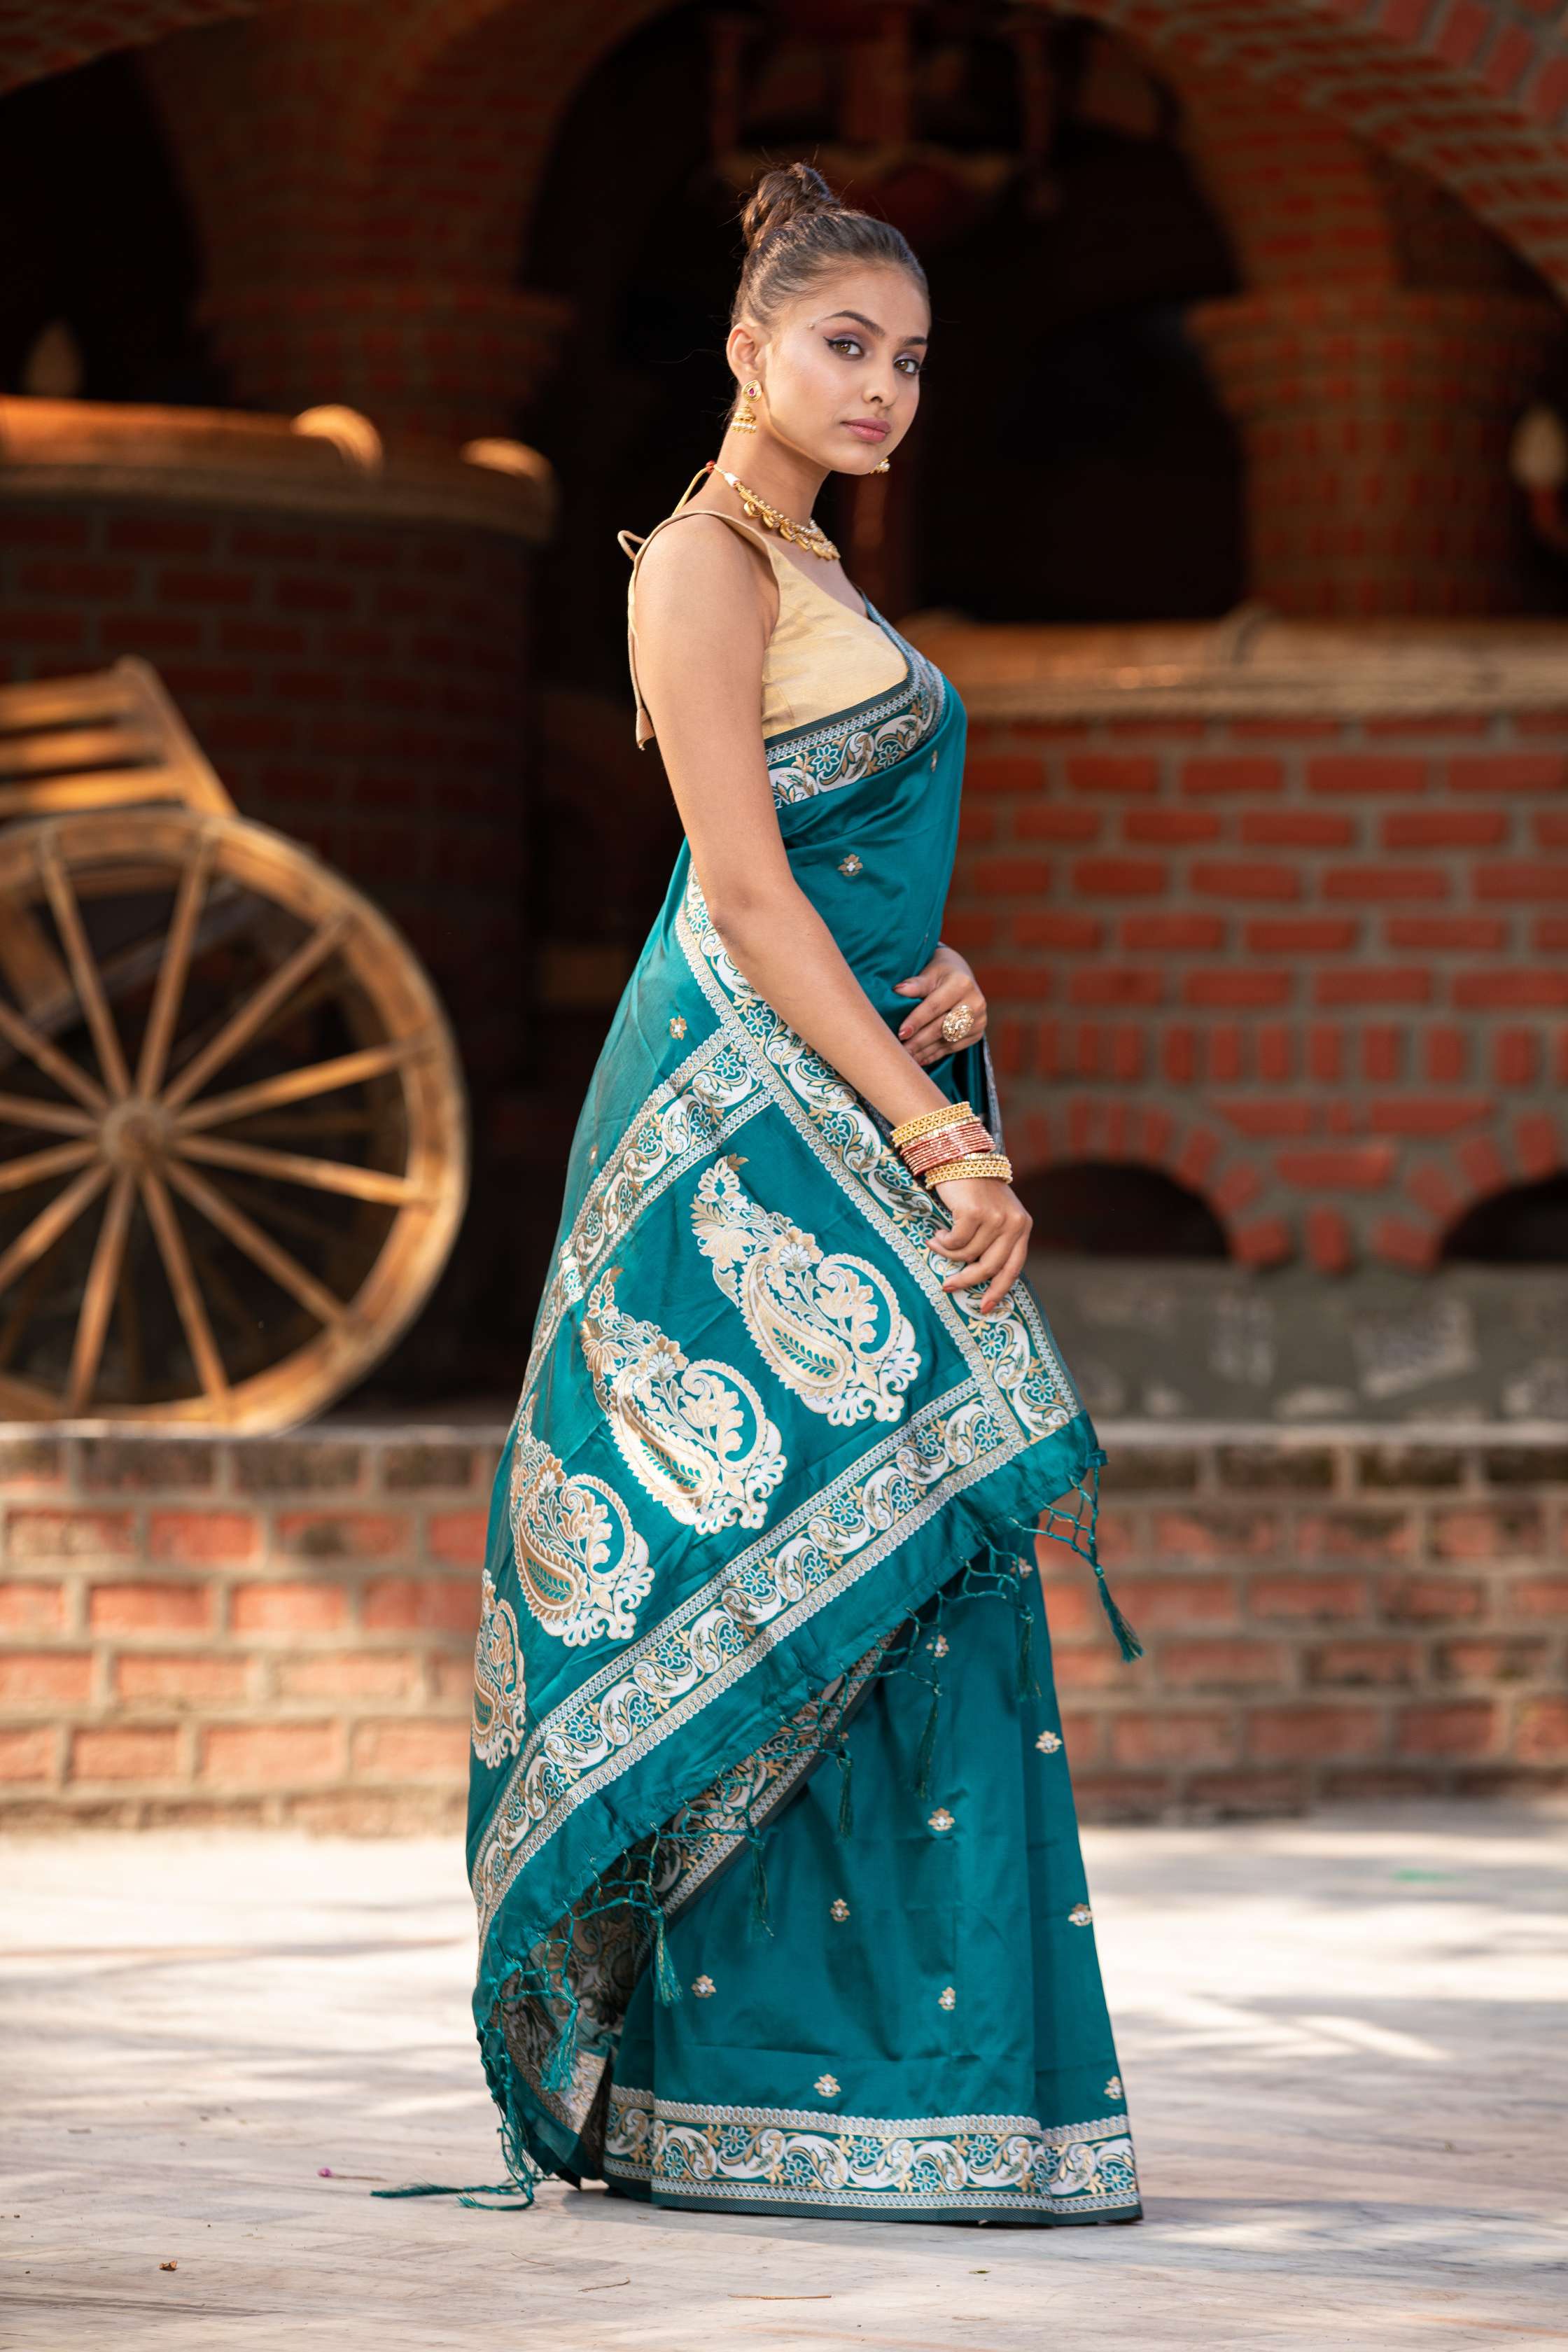 Women's Verdigris Blue Banarasi Saree - Karagiri